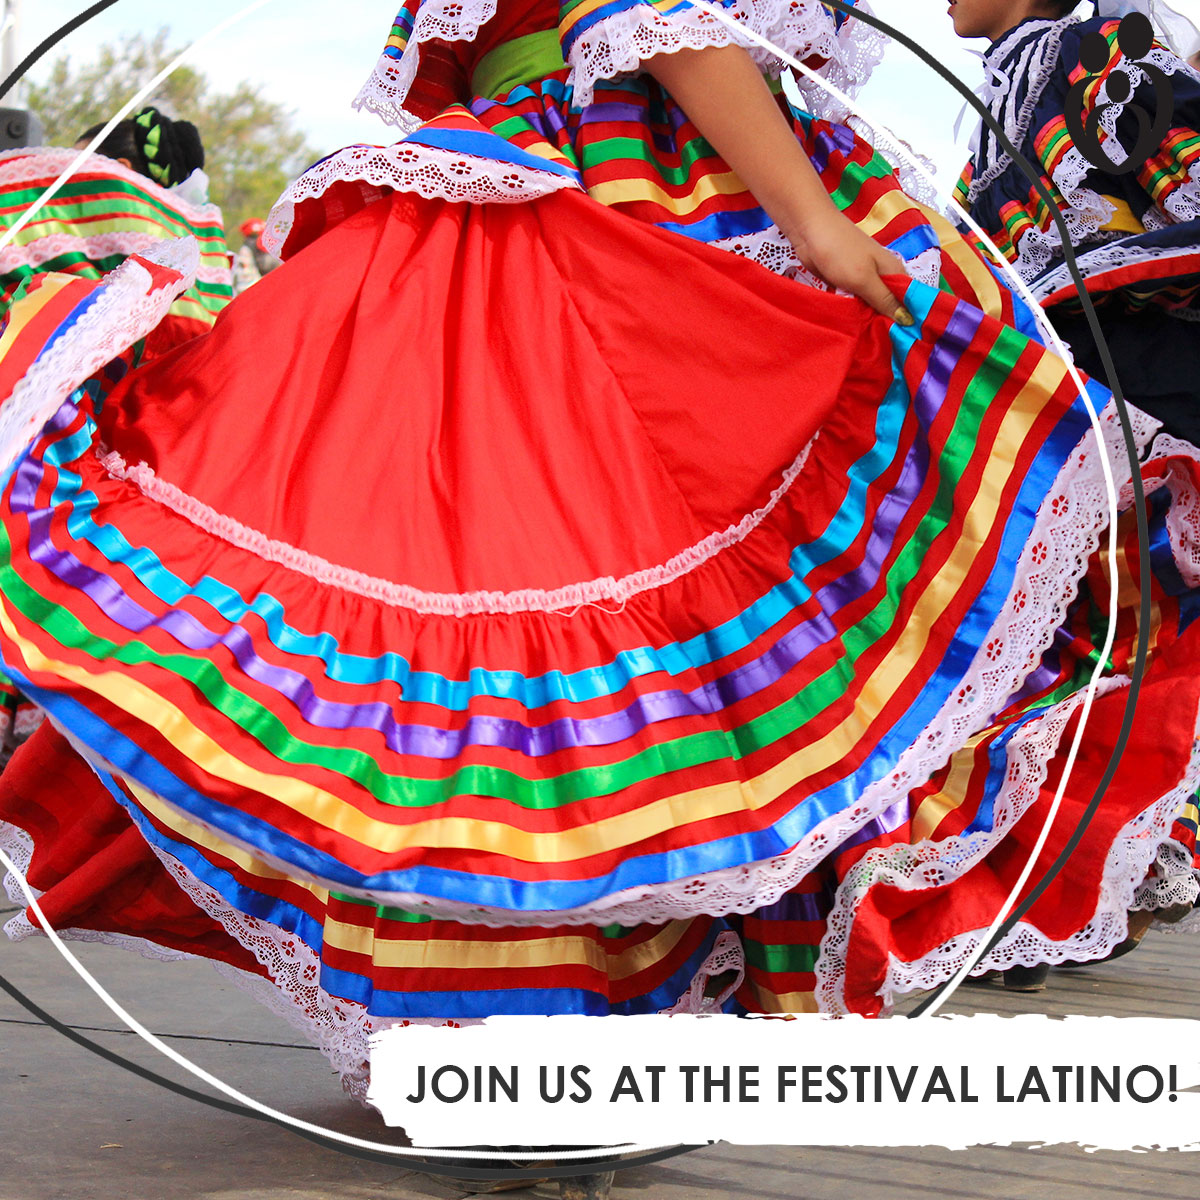 Festival Latino Event in Orange City, Iowa